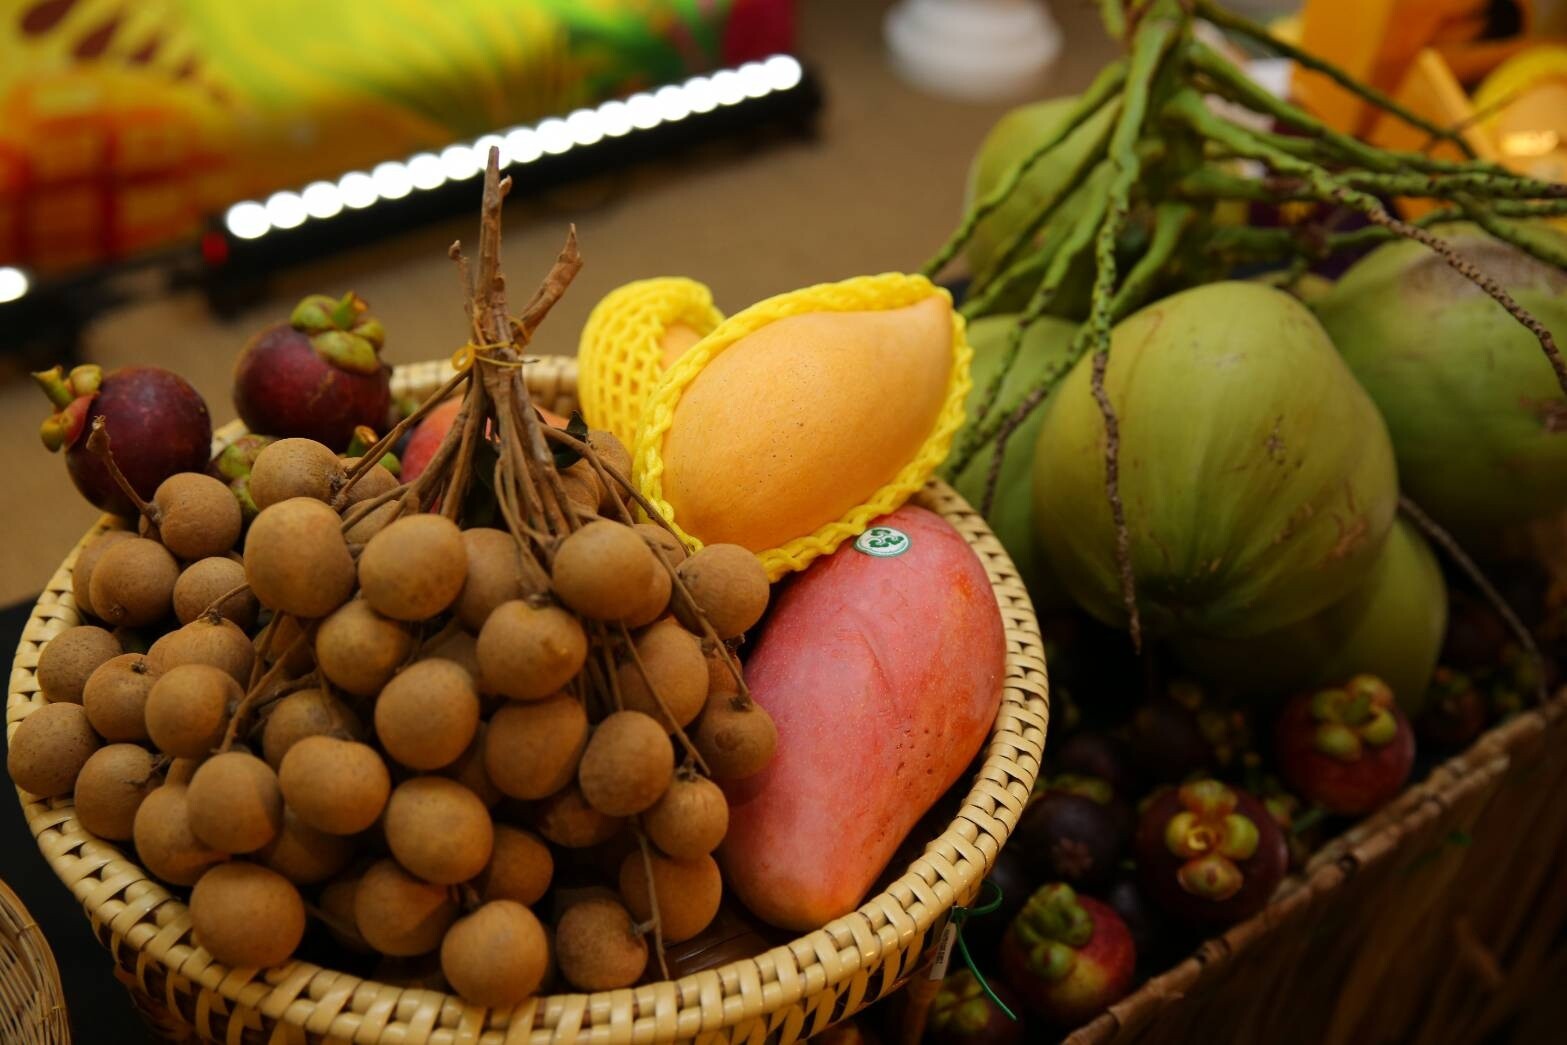 ปรอทแตก!!! "จุรินทร์”ไลฟ์สด”ขายผลไม้ไทยผ่าน”อาลีบาบา” คนจีนแห่ชมนับล้าน